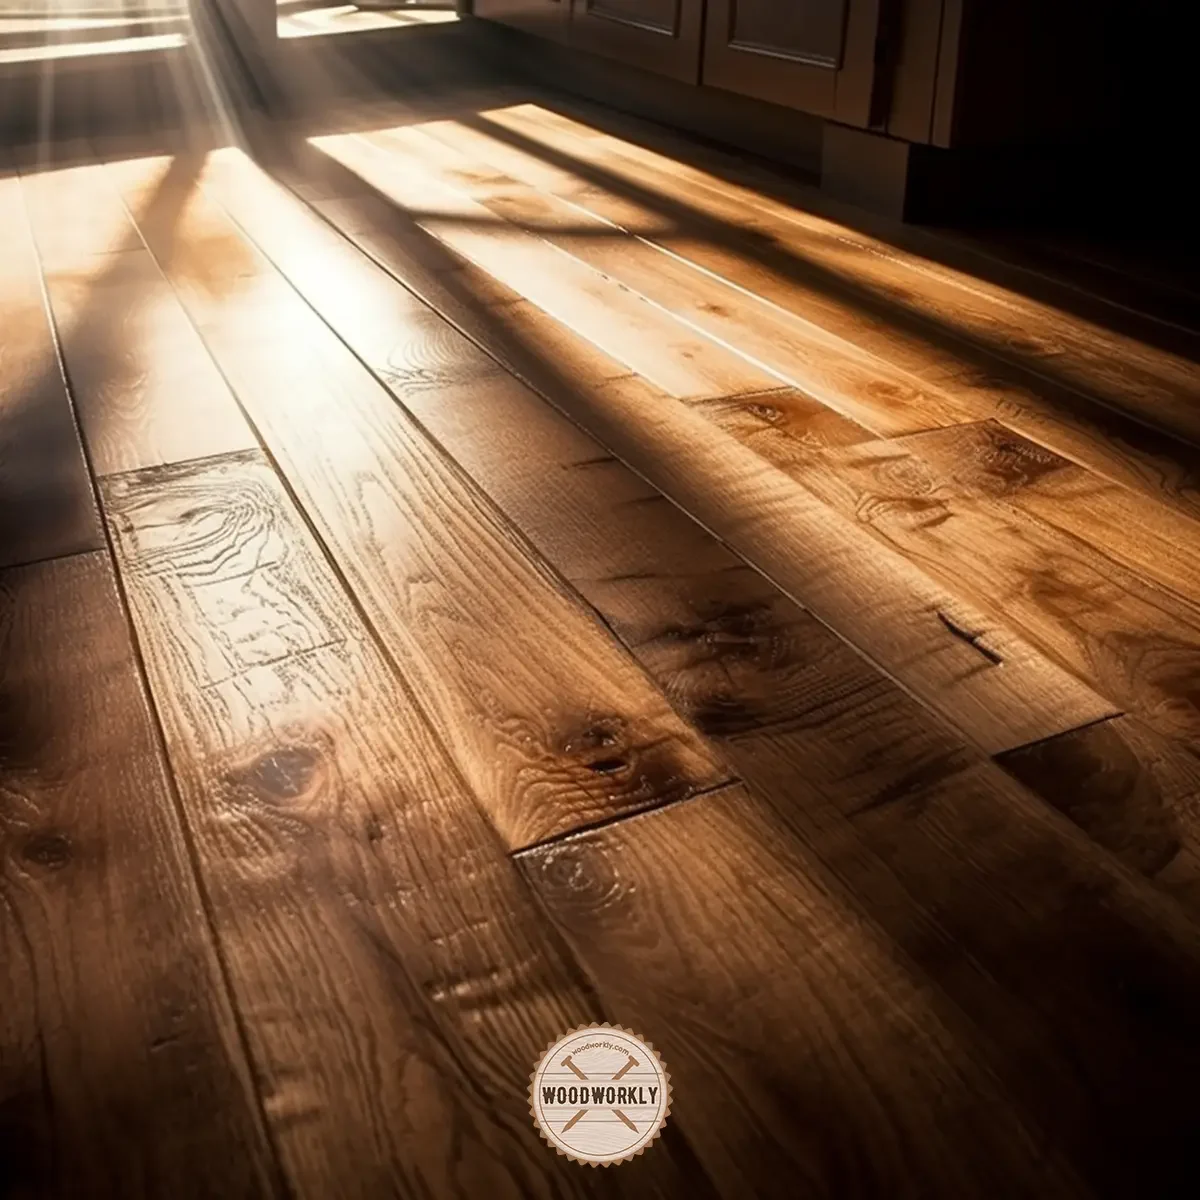 grain pattern of clear stained oak wood floor